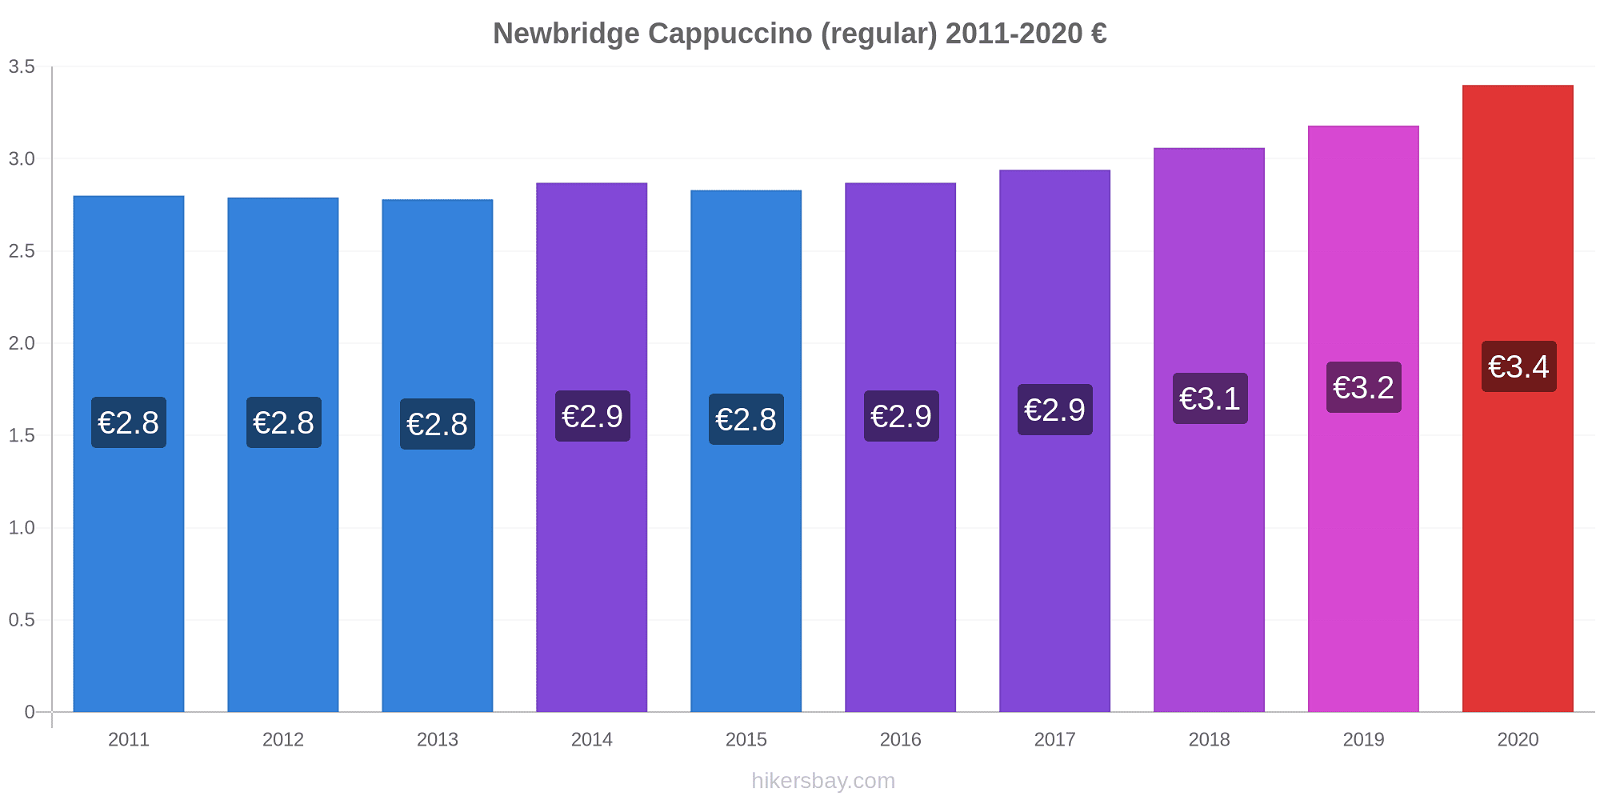 Newbridge variação de preço Capuccino (regular) hikersbay.com